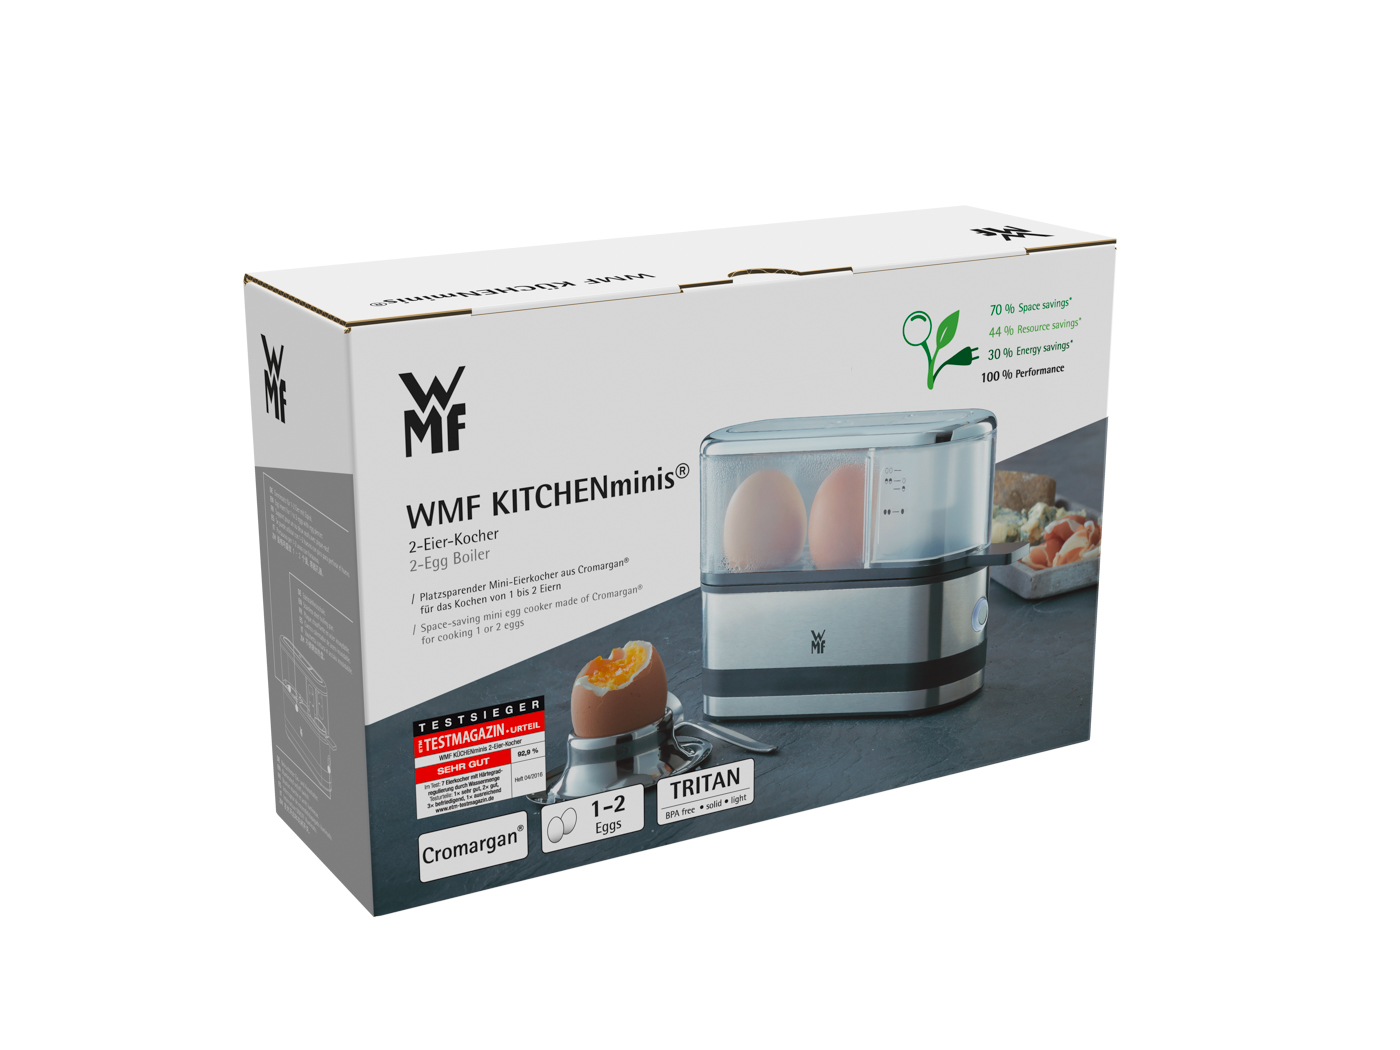 WMF Küchenminis 2-Eier-Kocher